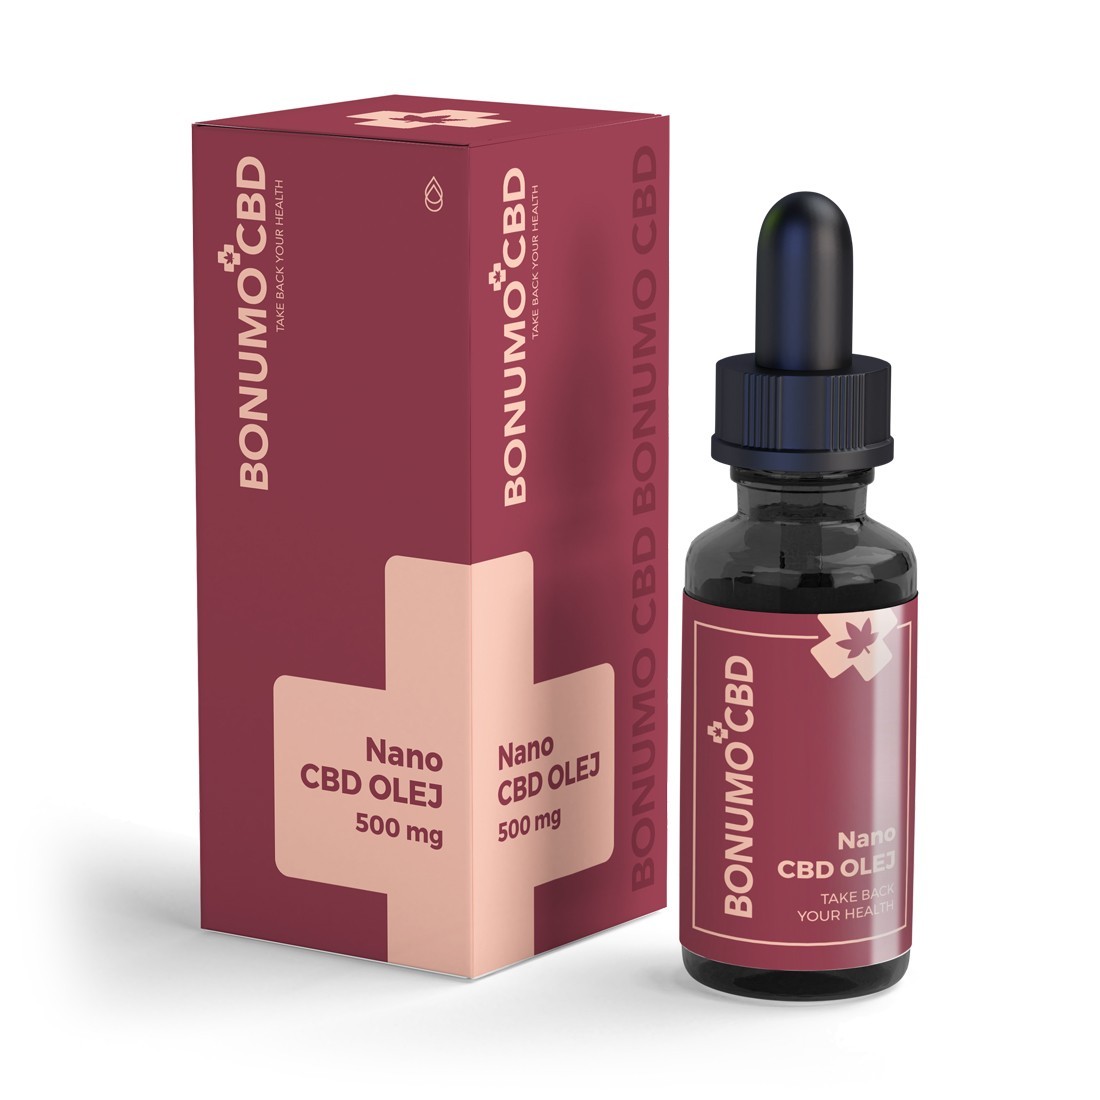  Nano CBD olej | 500 mg